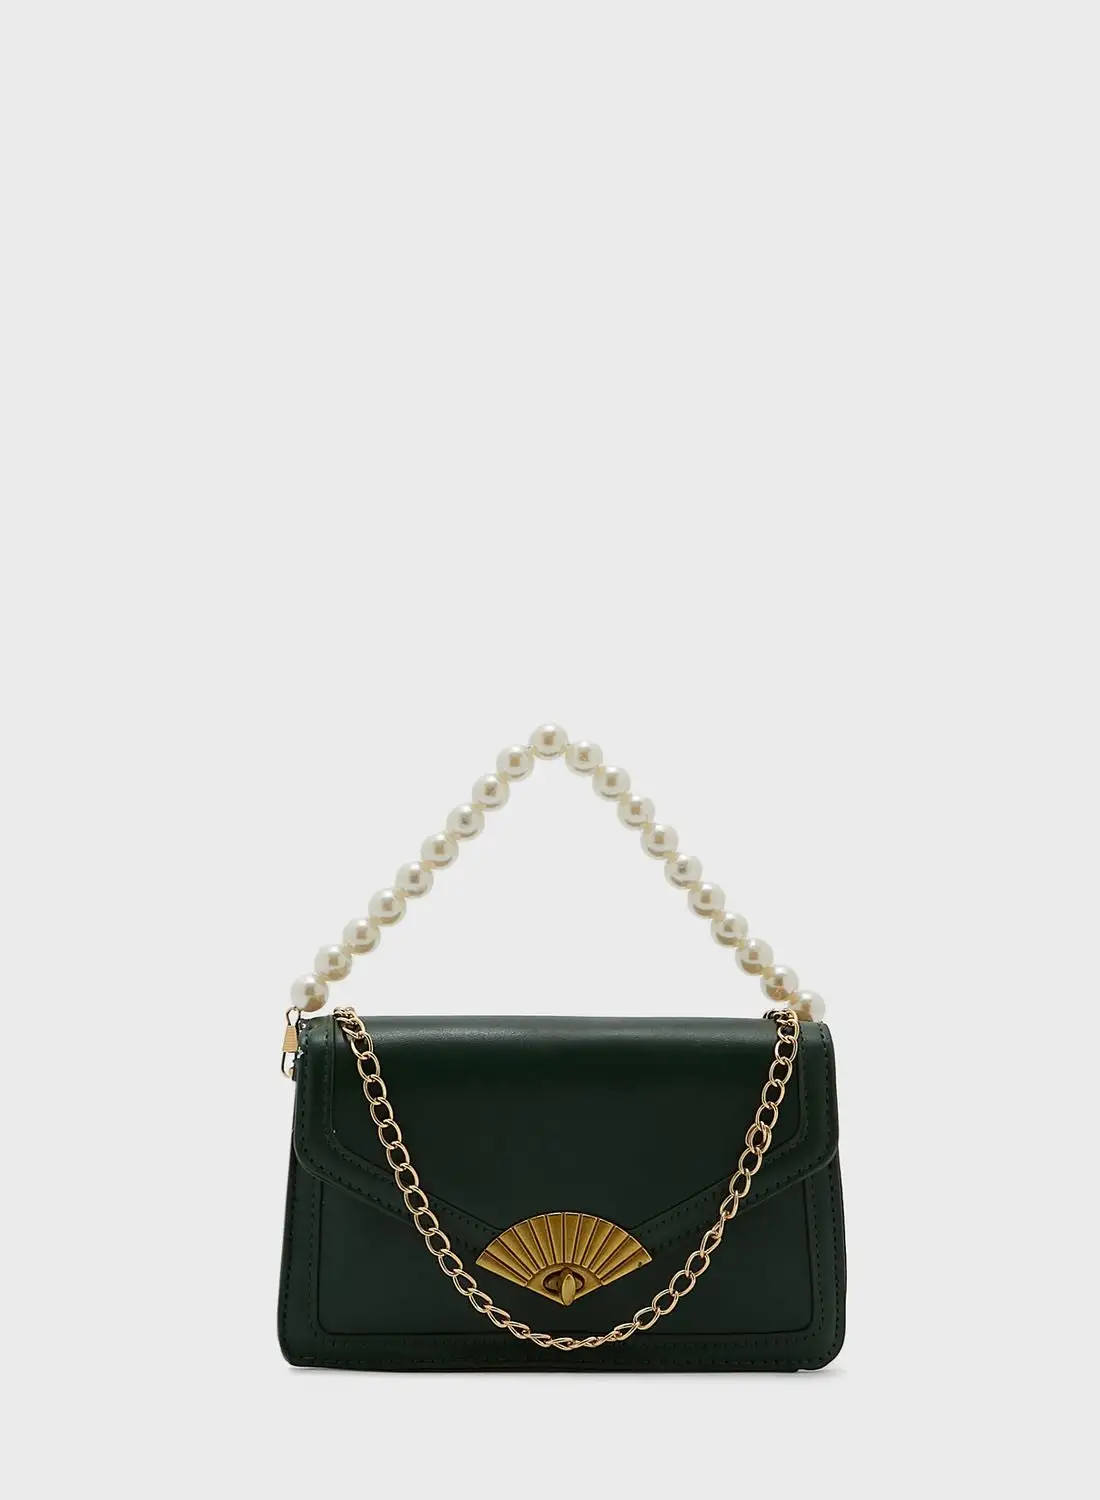 ELLA Pealr And Chain Strap Handbag With Fan Clasp